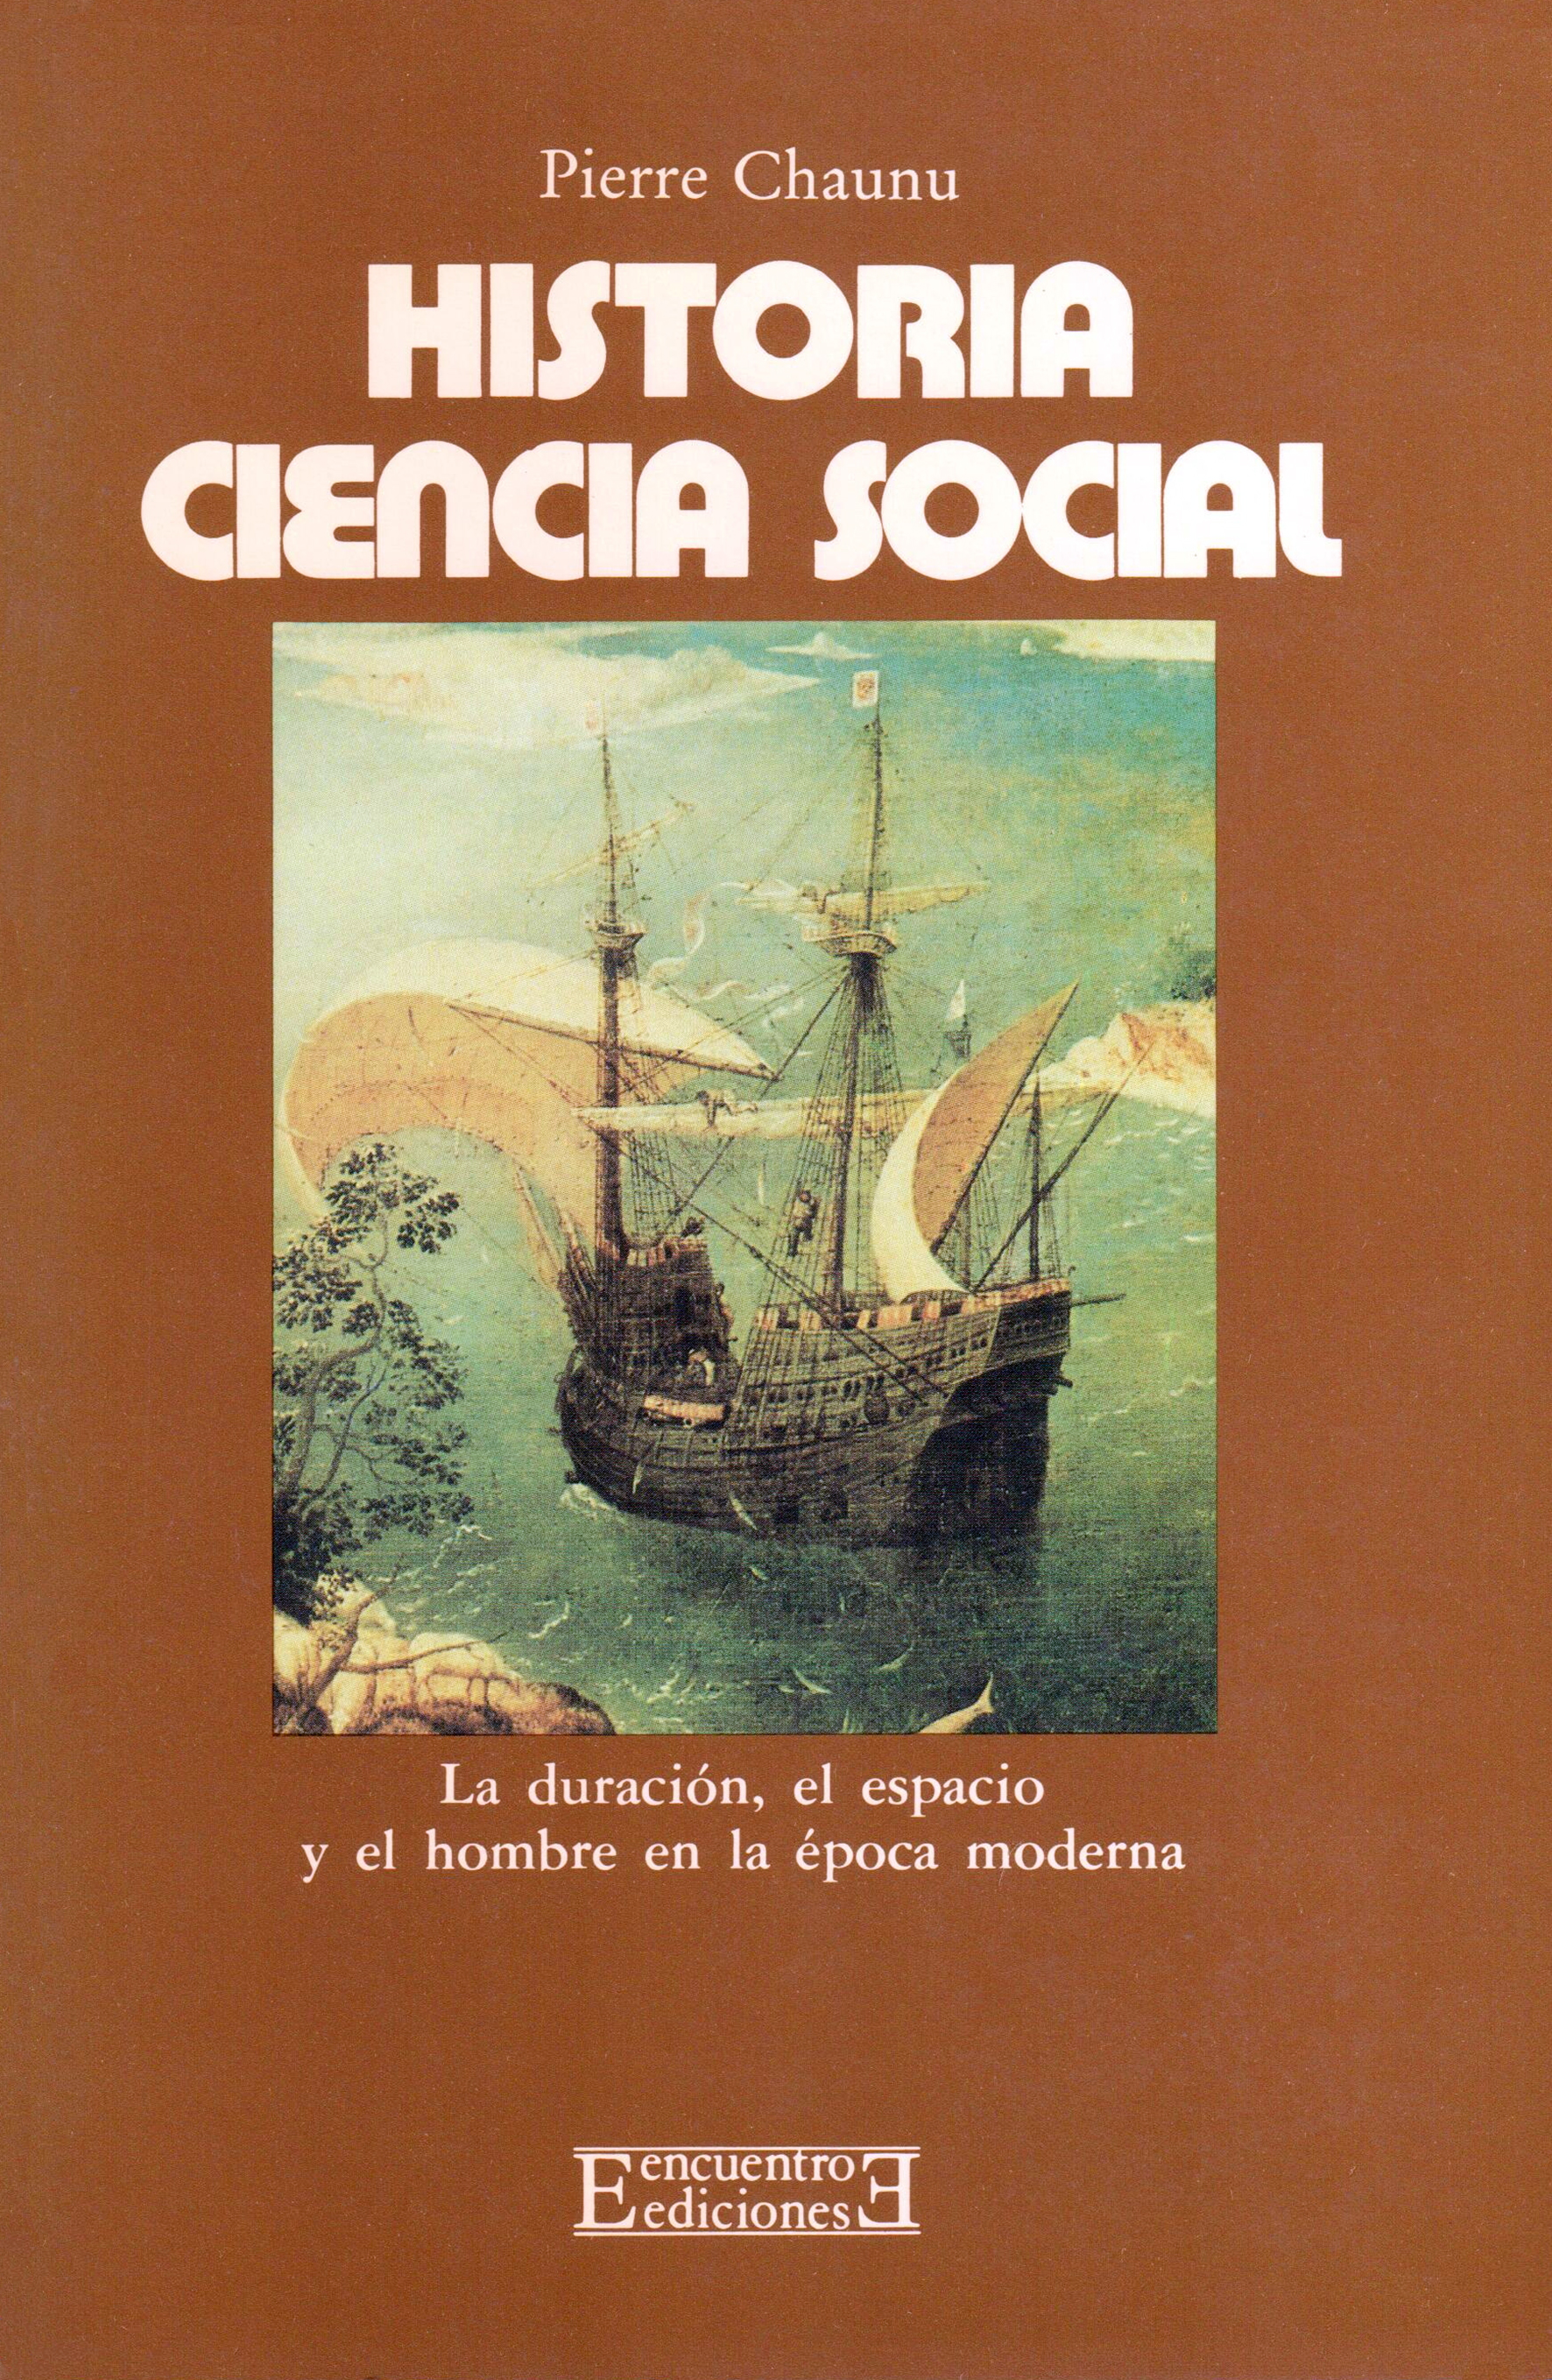 Adiccion extraño bostezando Historia, ciencia social - Ediciones Encuentro